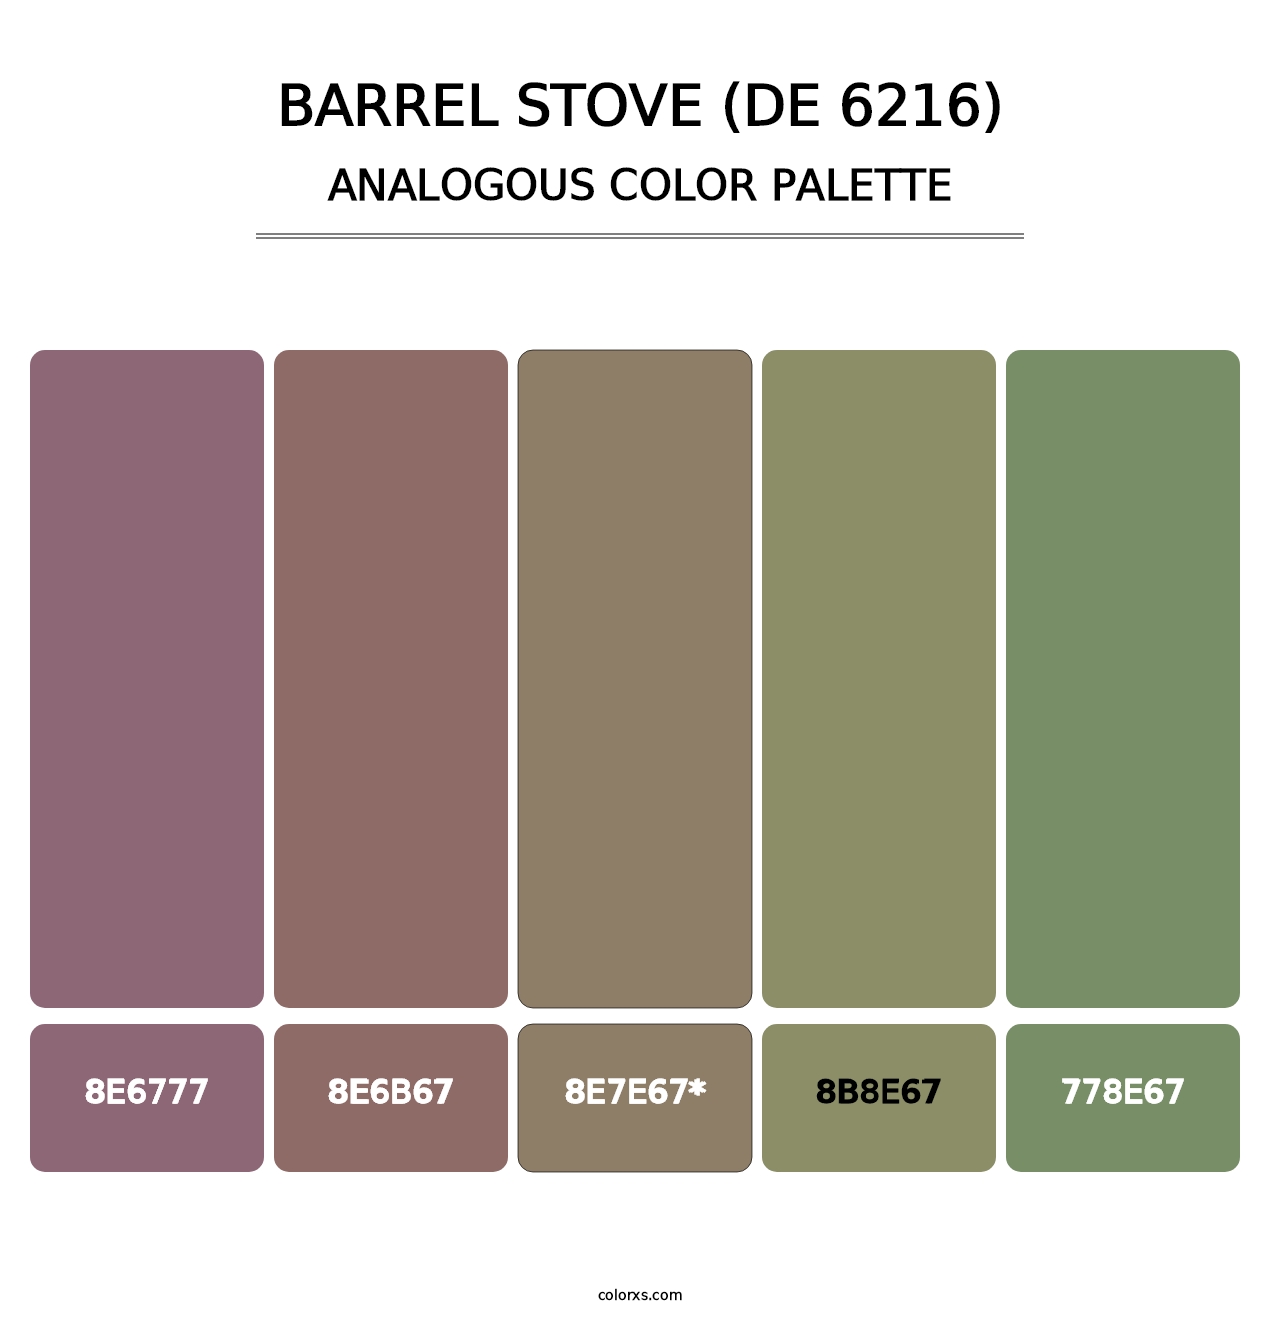 Barrel Stove (DE 6216) - Analogous Color Palette